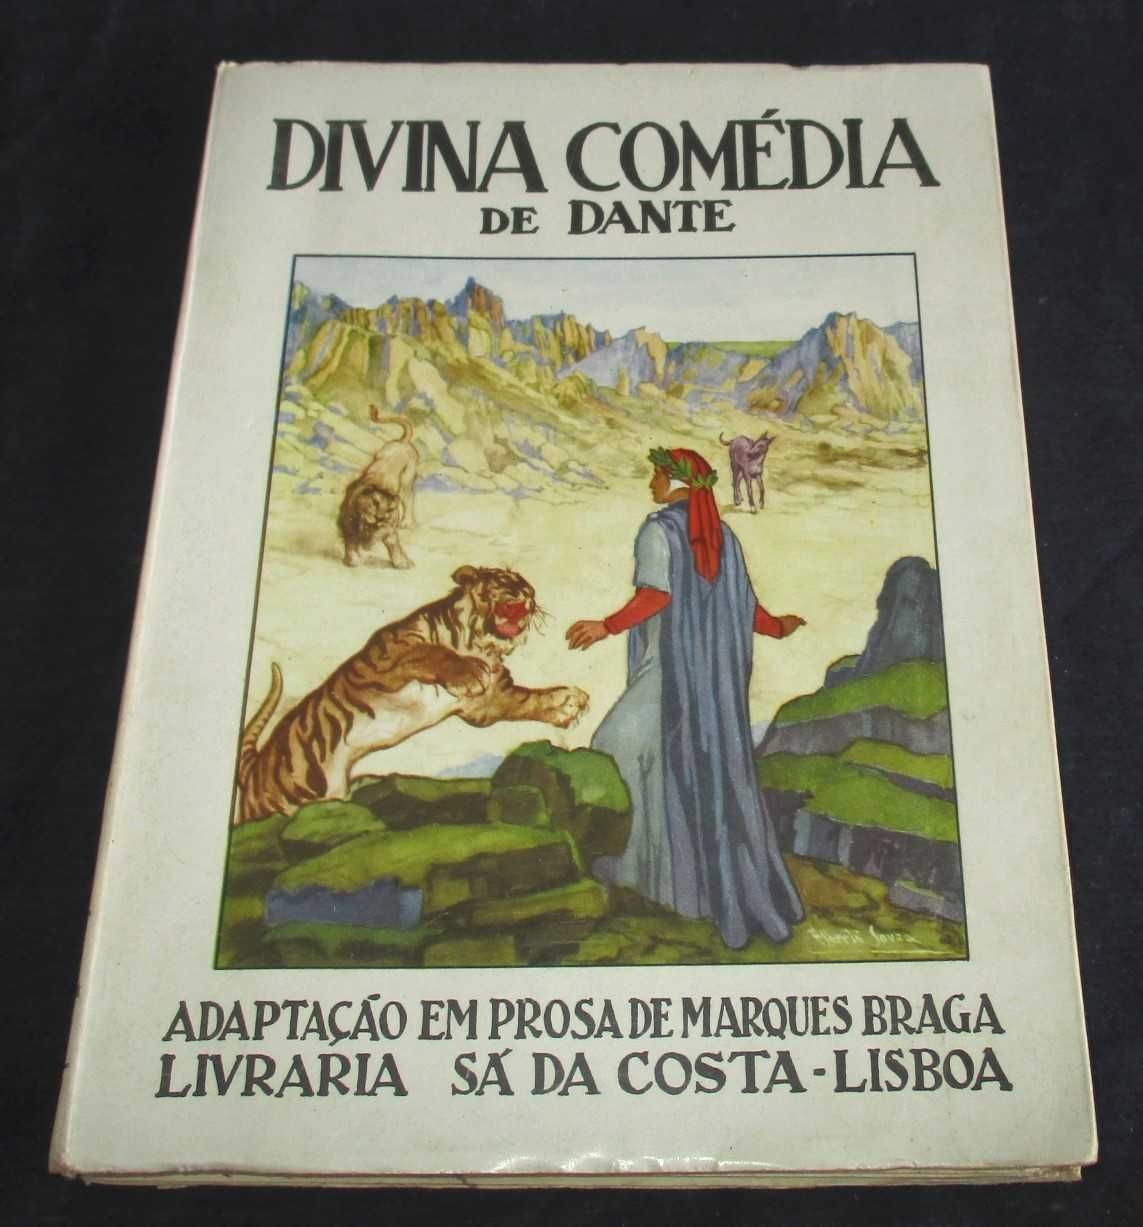 Livro Divina Comédia de Dante adaptação Marques Braga